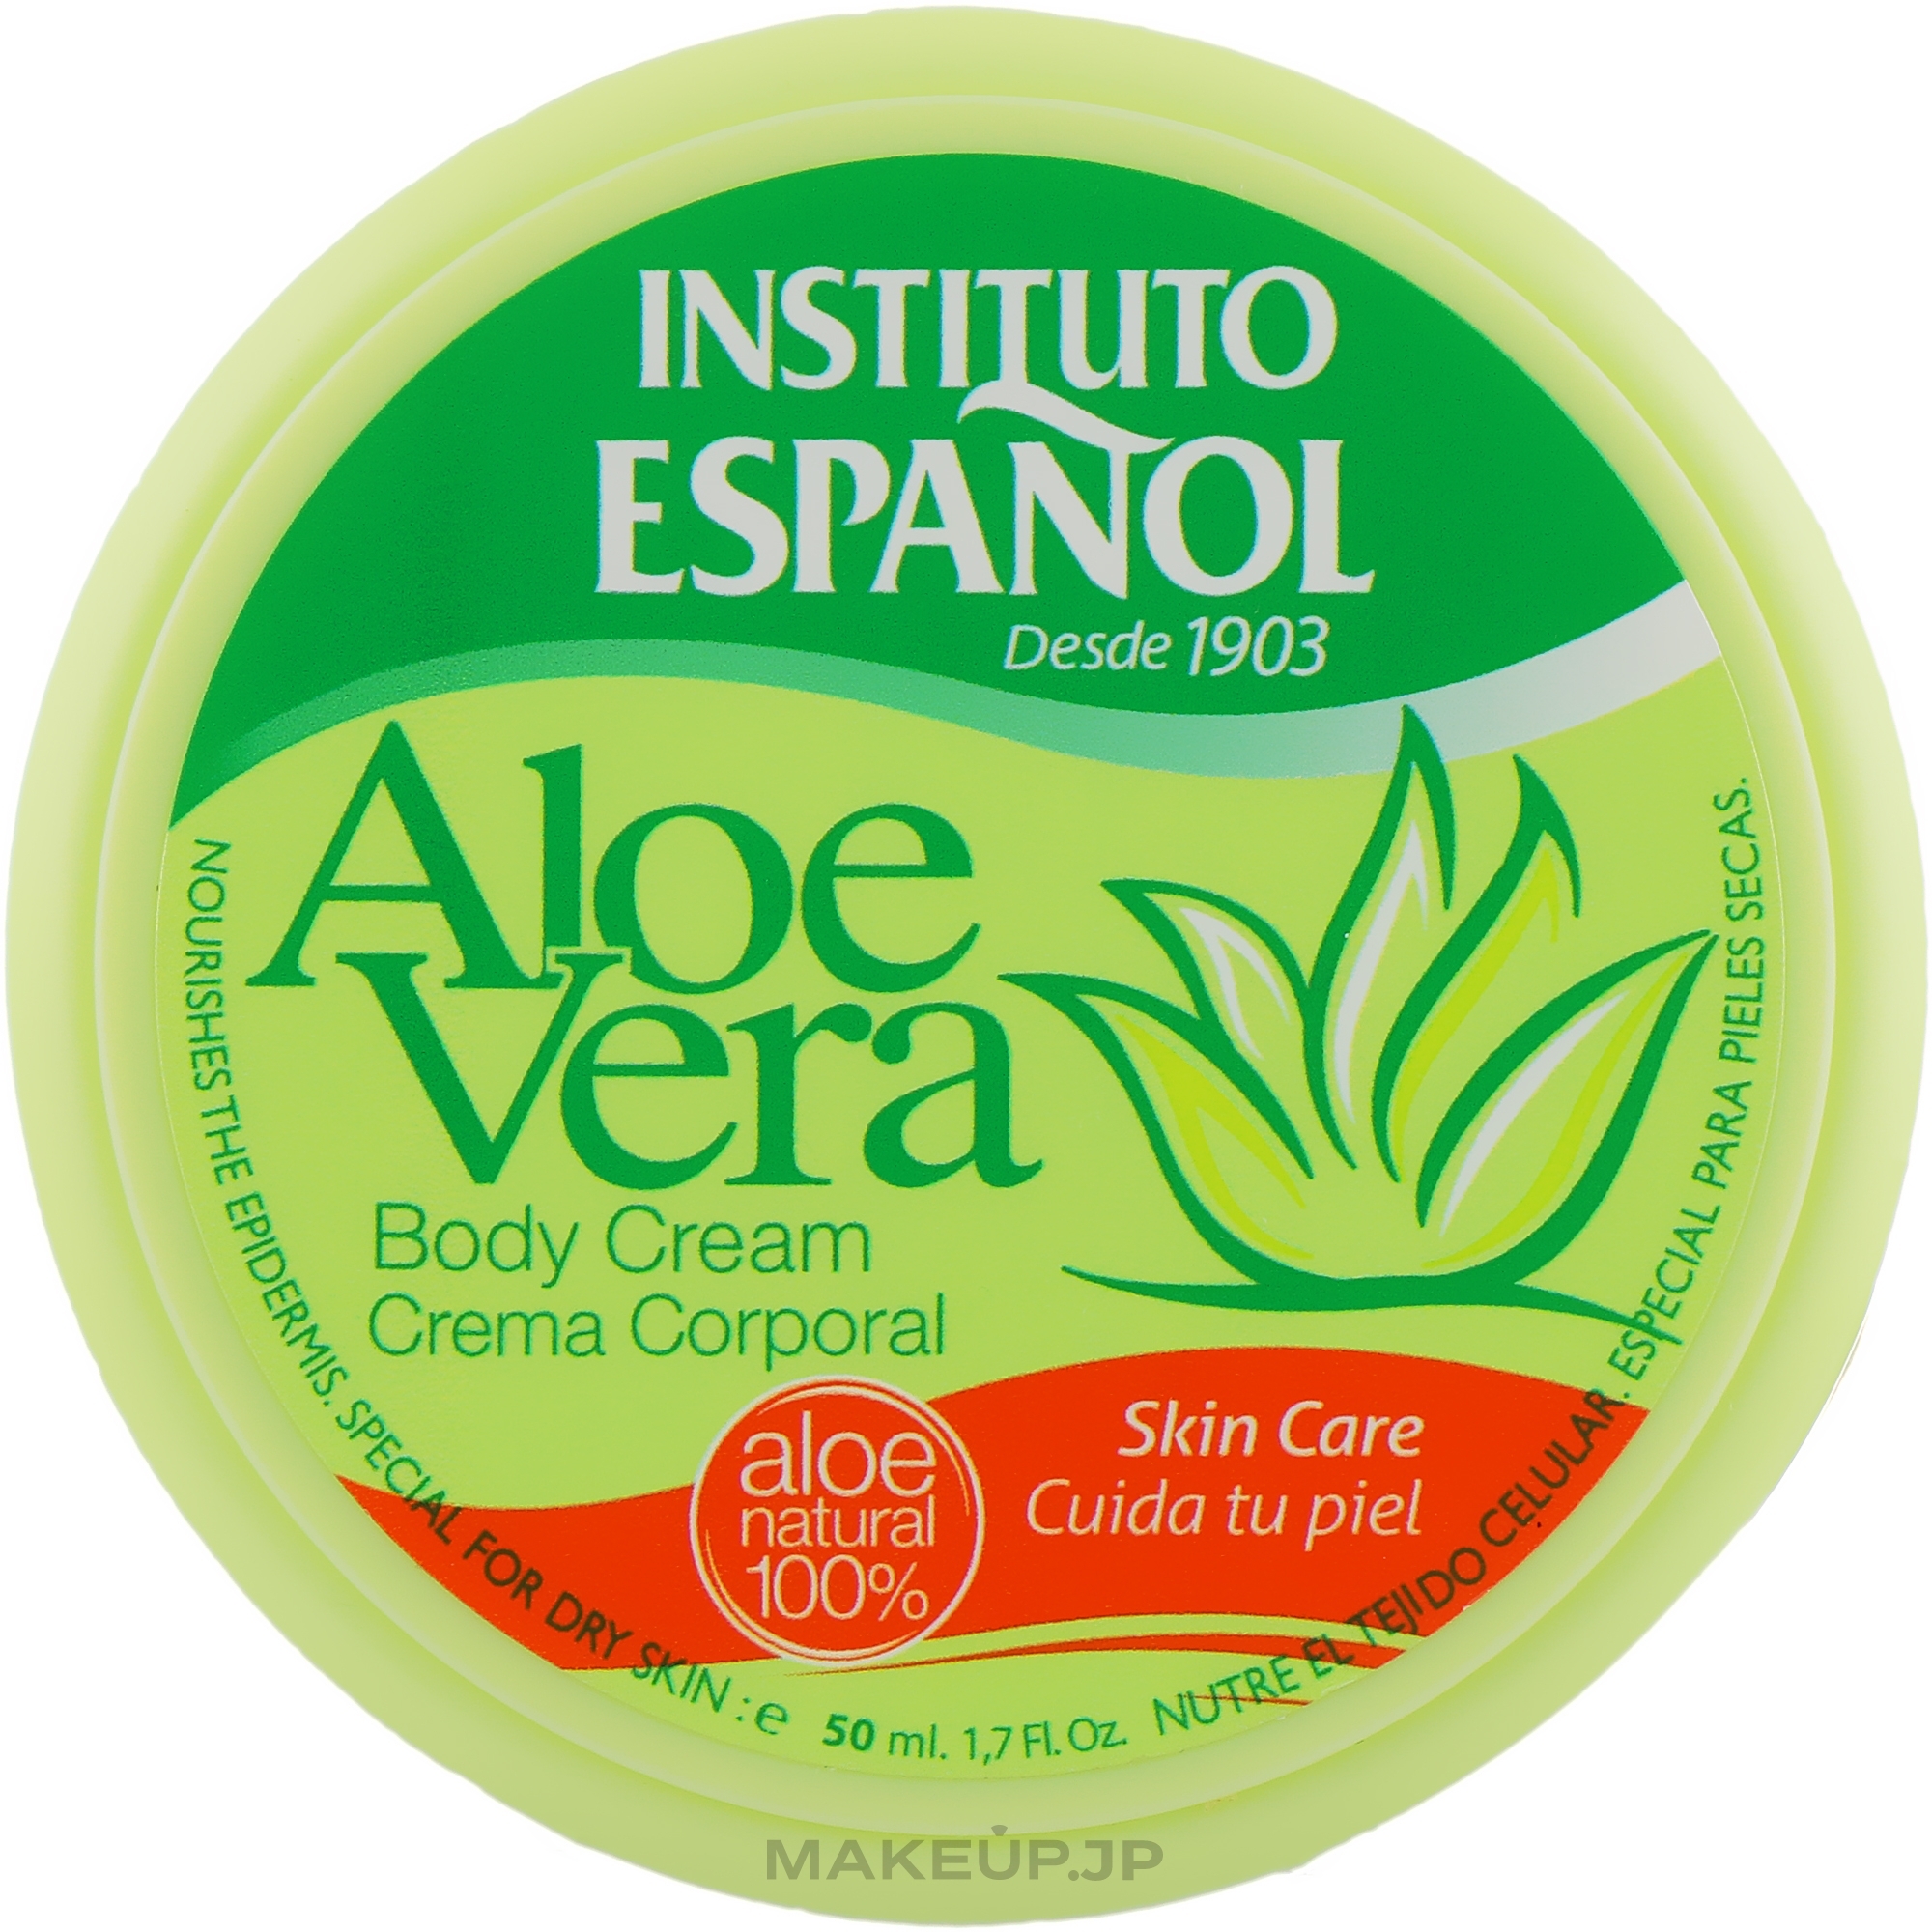 Body Cream "Aloe Vera" - Instituto Espanol Aloe Vera Body Cream — photo 50 ml